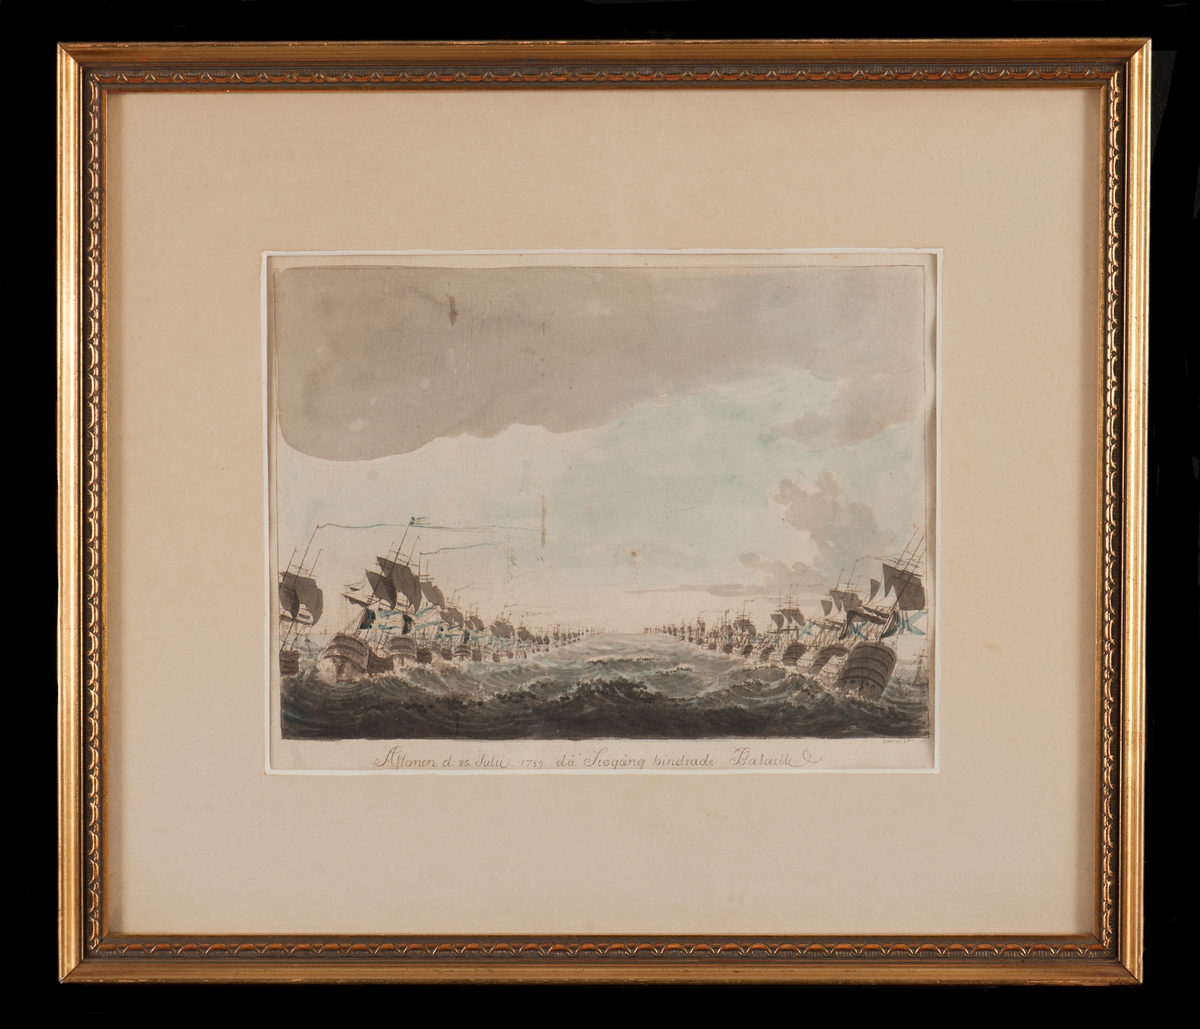 "Aftonen den 25 Julii  1789, då sjögång hindrade Bataille"